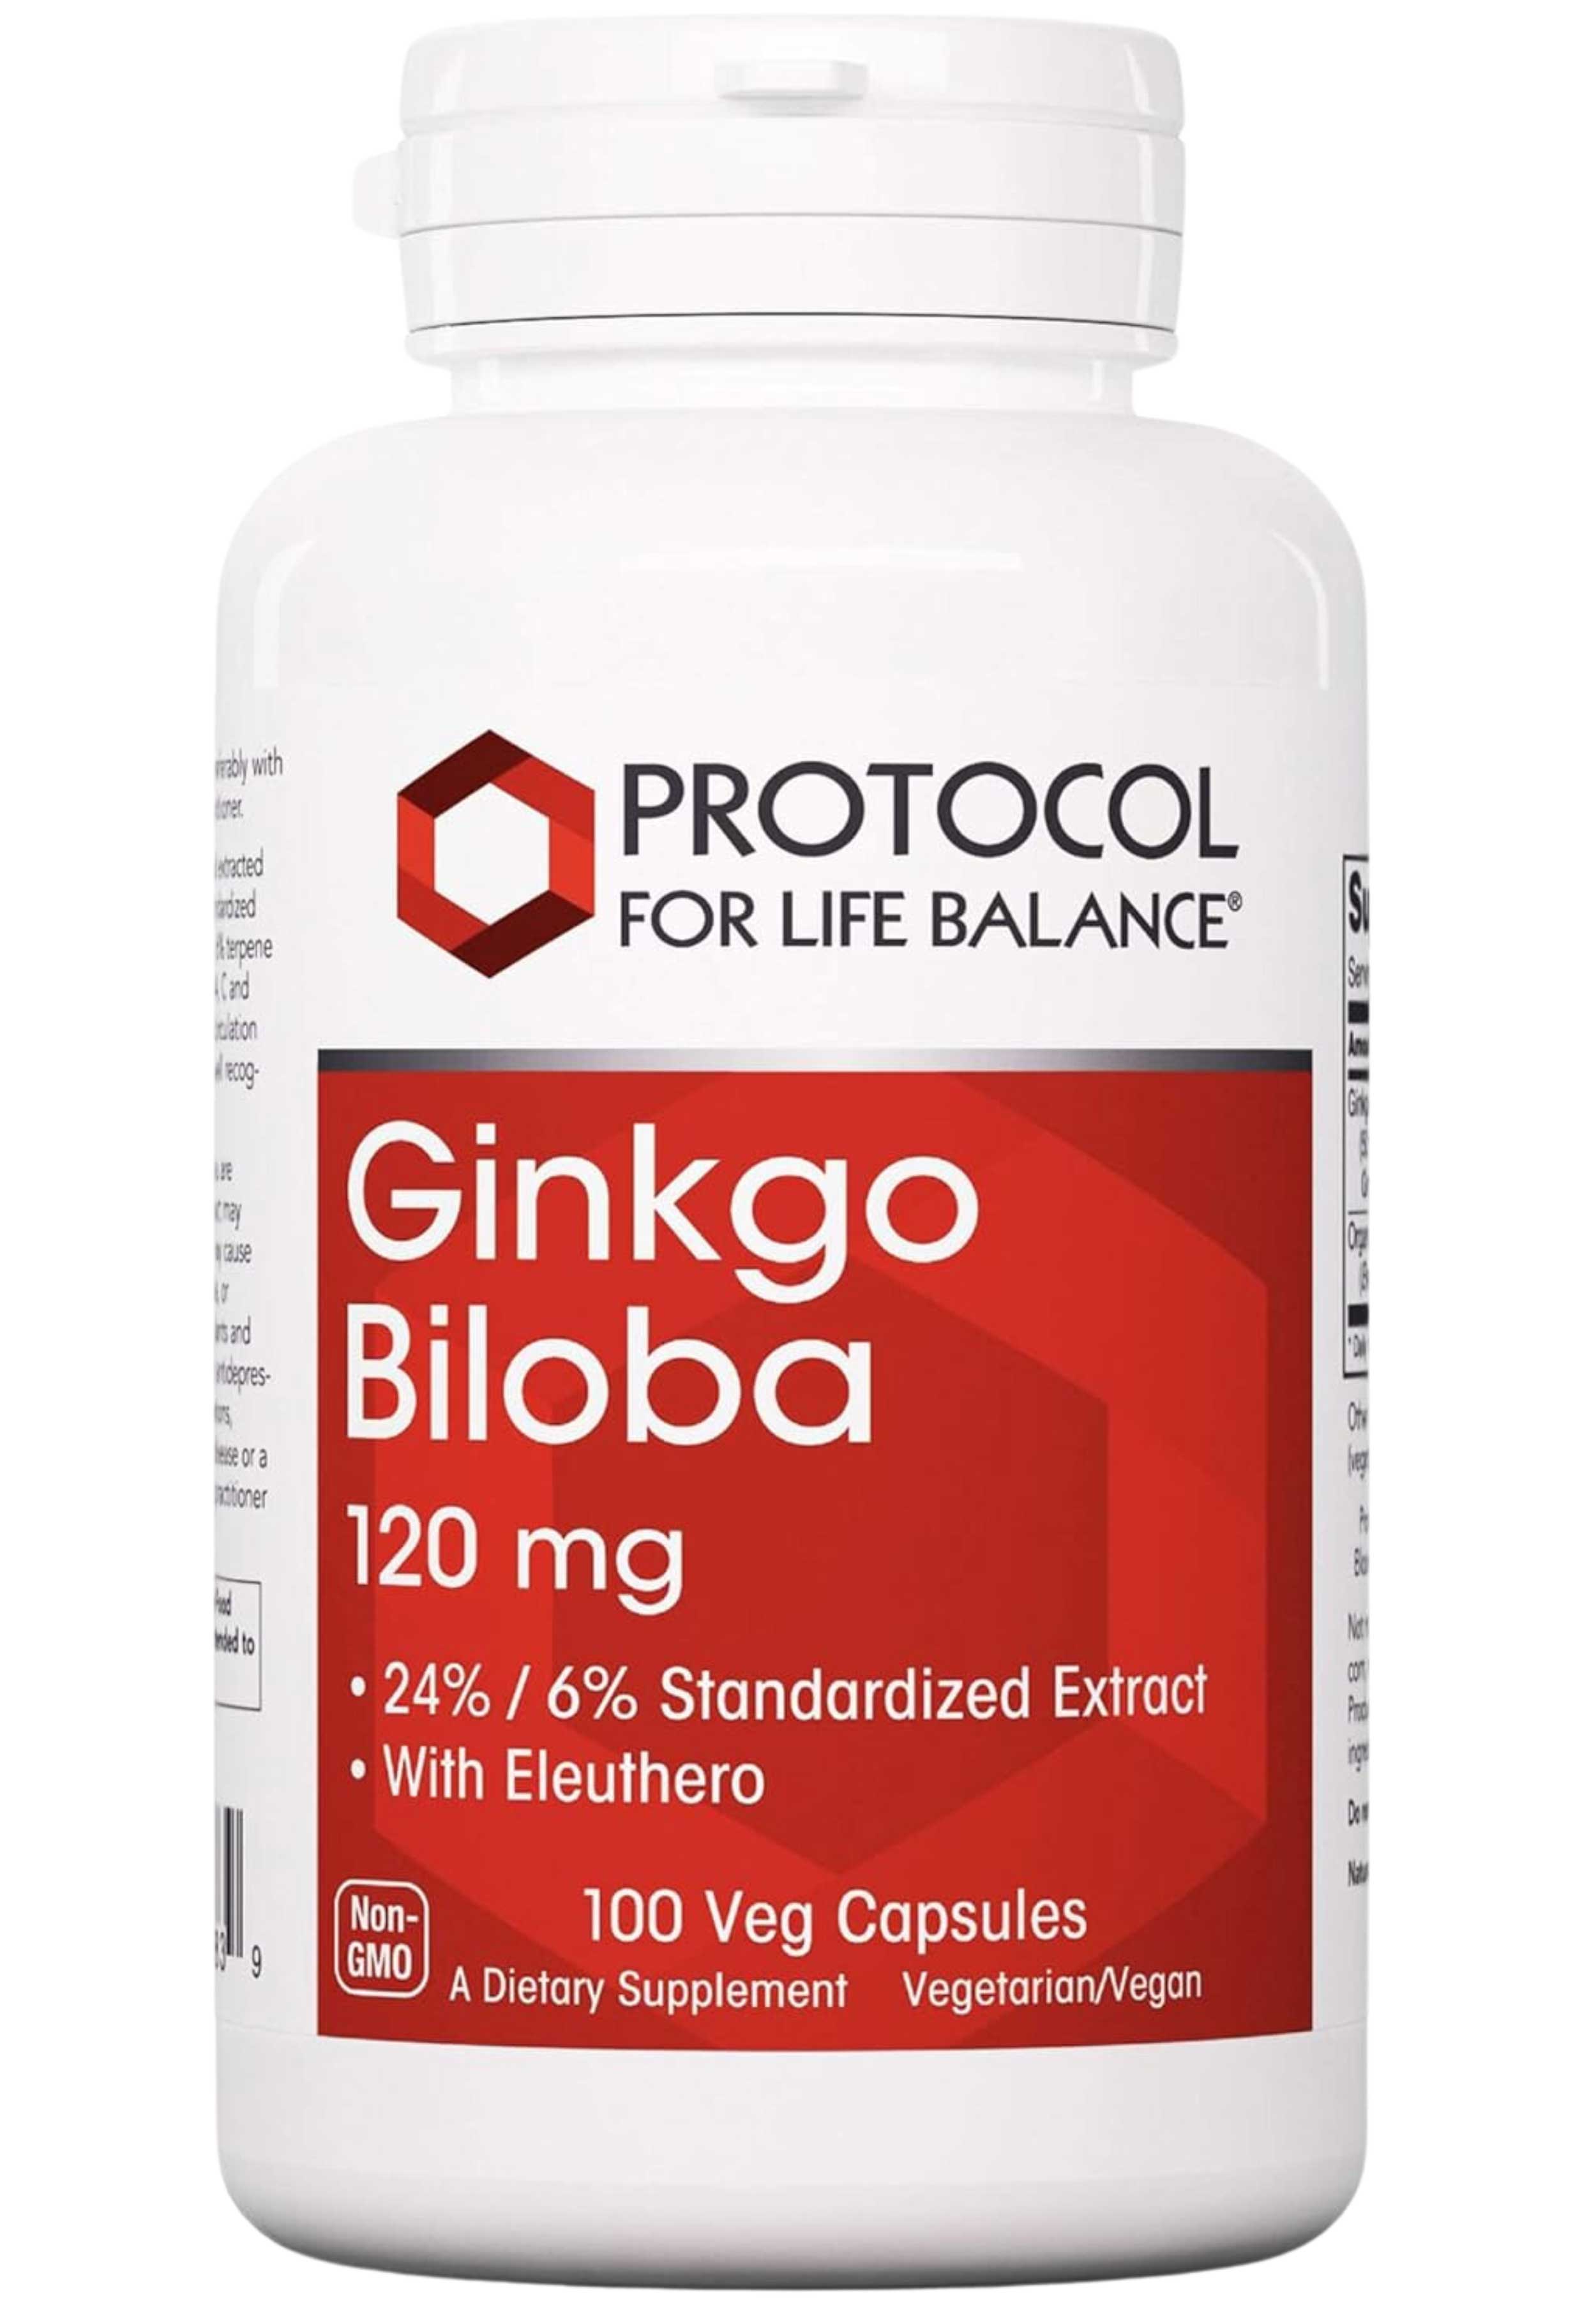 Protocol for Life Balance Ginkgo Biloba 120 mg